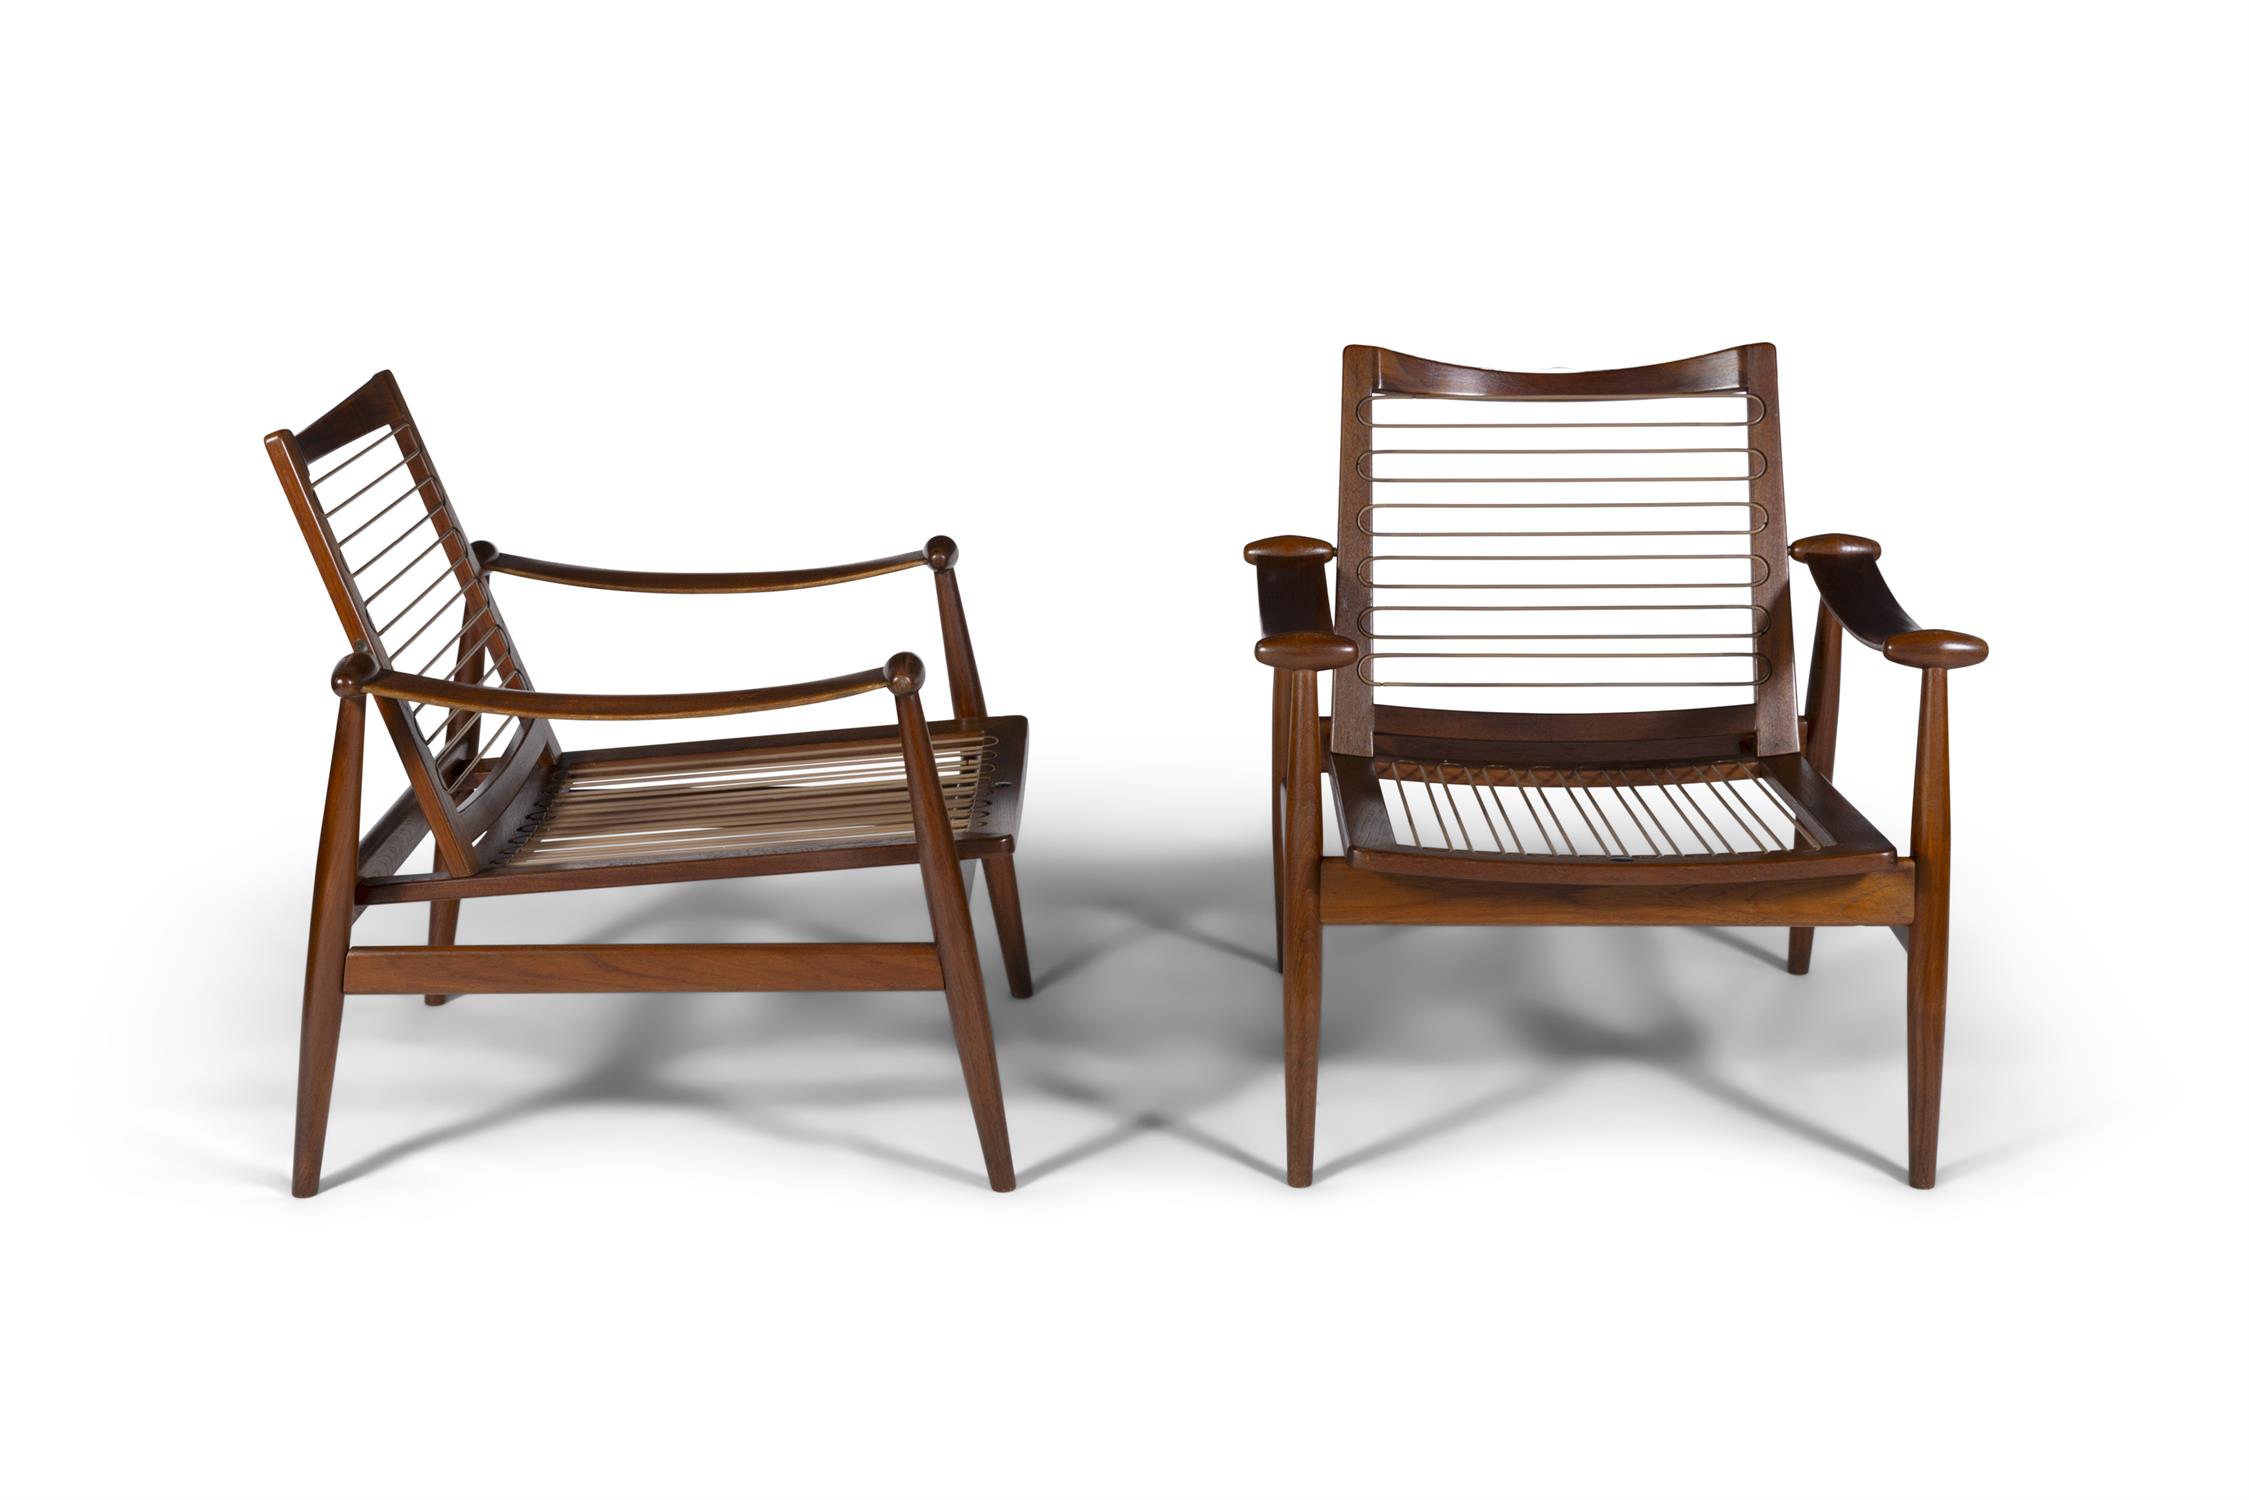 FINN JUHL (1912 - 1989) A pair of teak spade chairs by Finn Juhl. Denmark, c.1960. - Image 5 of 7